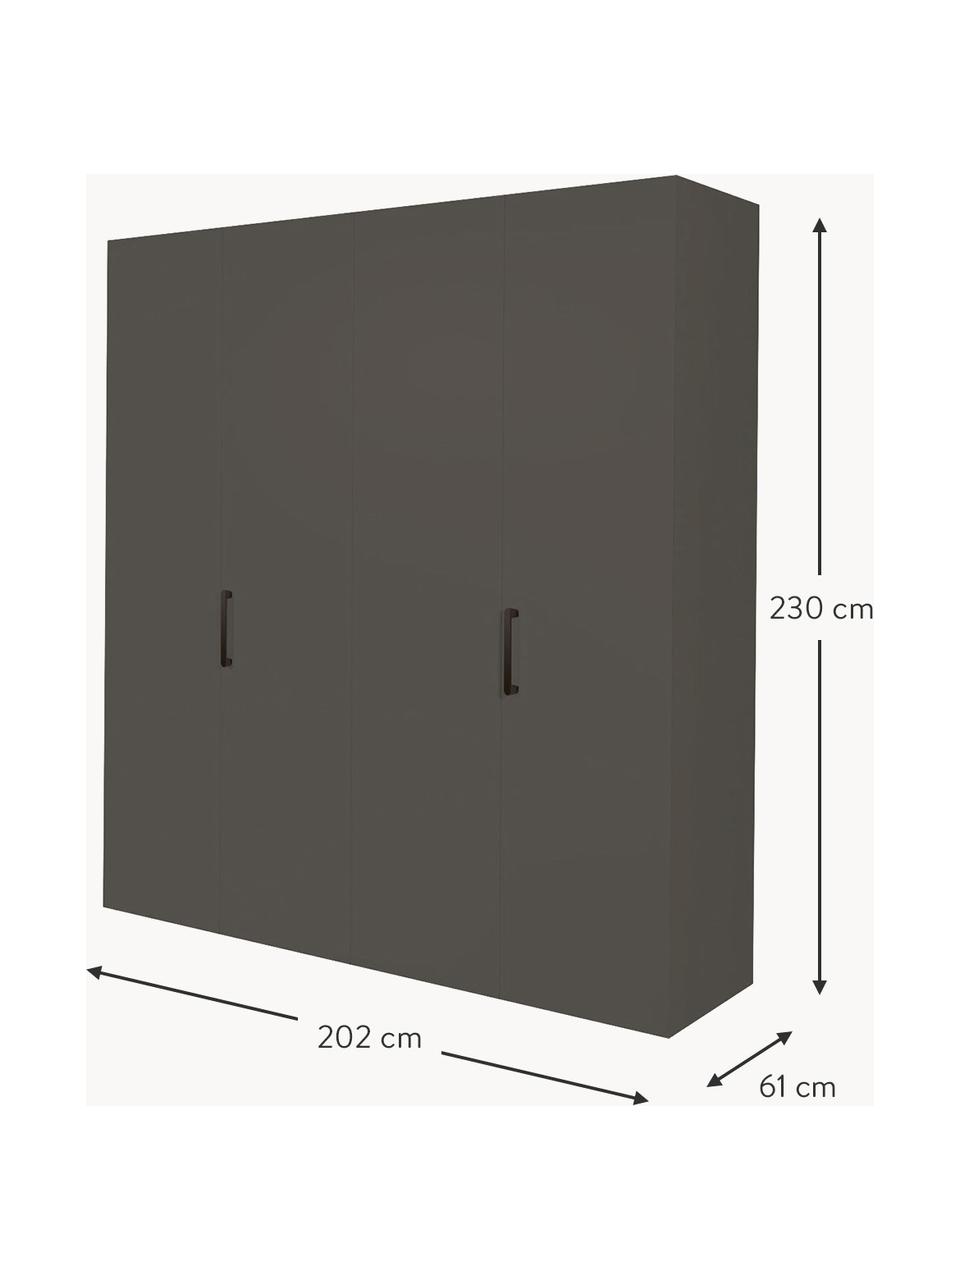 Draaideurkast Madison 4 deuren, inclusief montageservice, Frame: panelen op houtbasis, gel, Antraciet, B 202 cm x H 230 cm